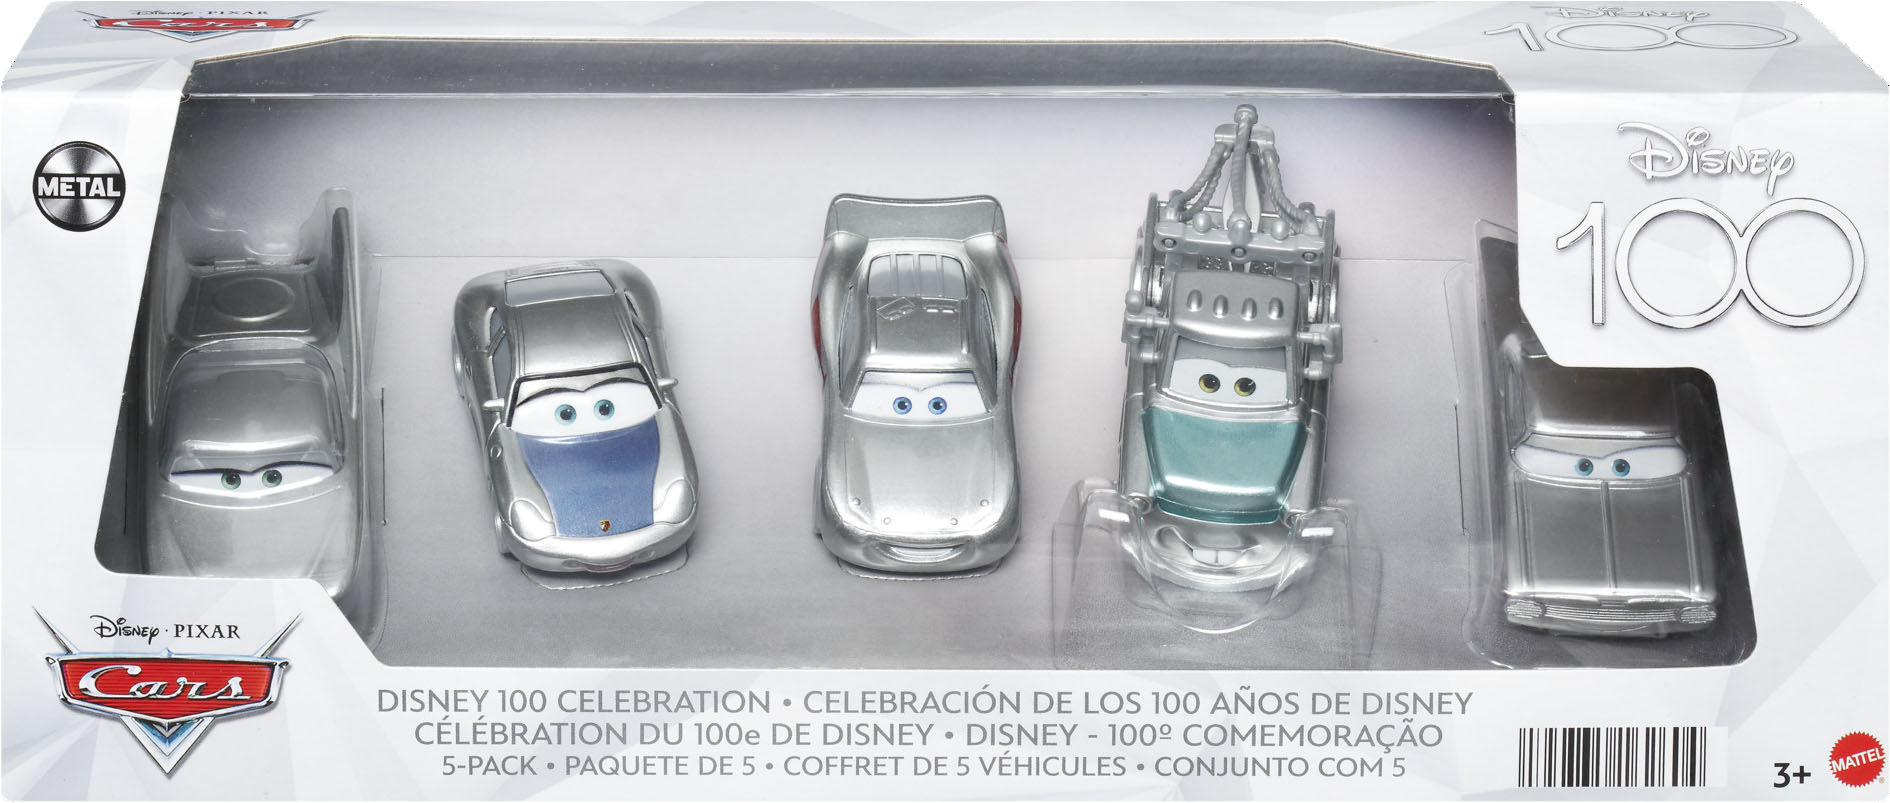 Disneys Pixar 5 Pack